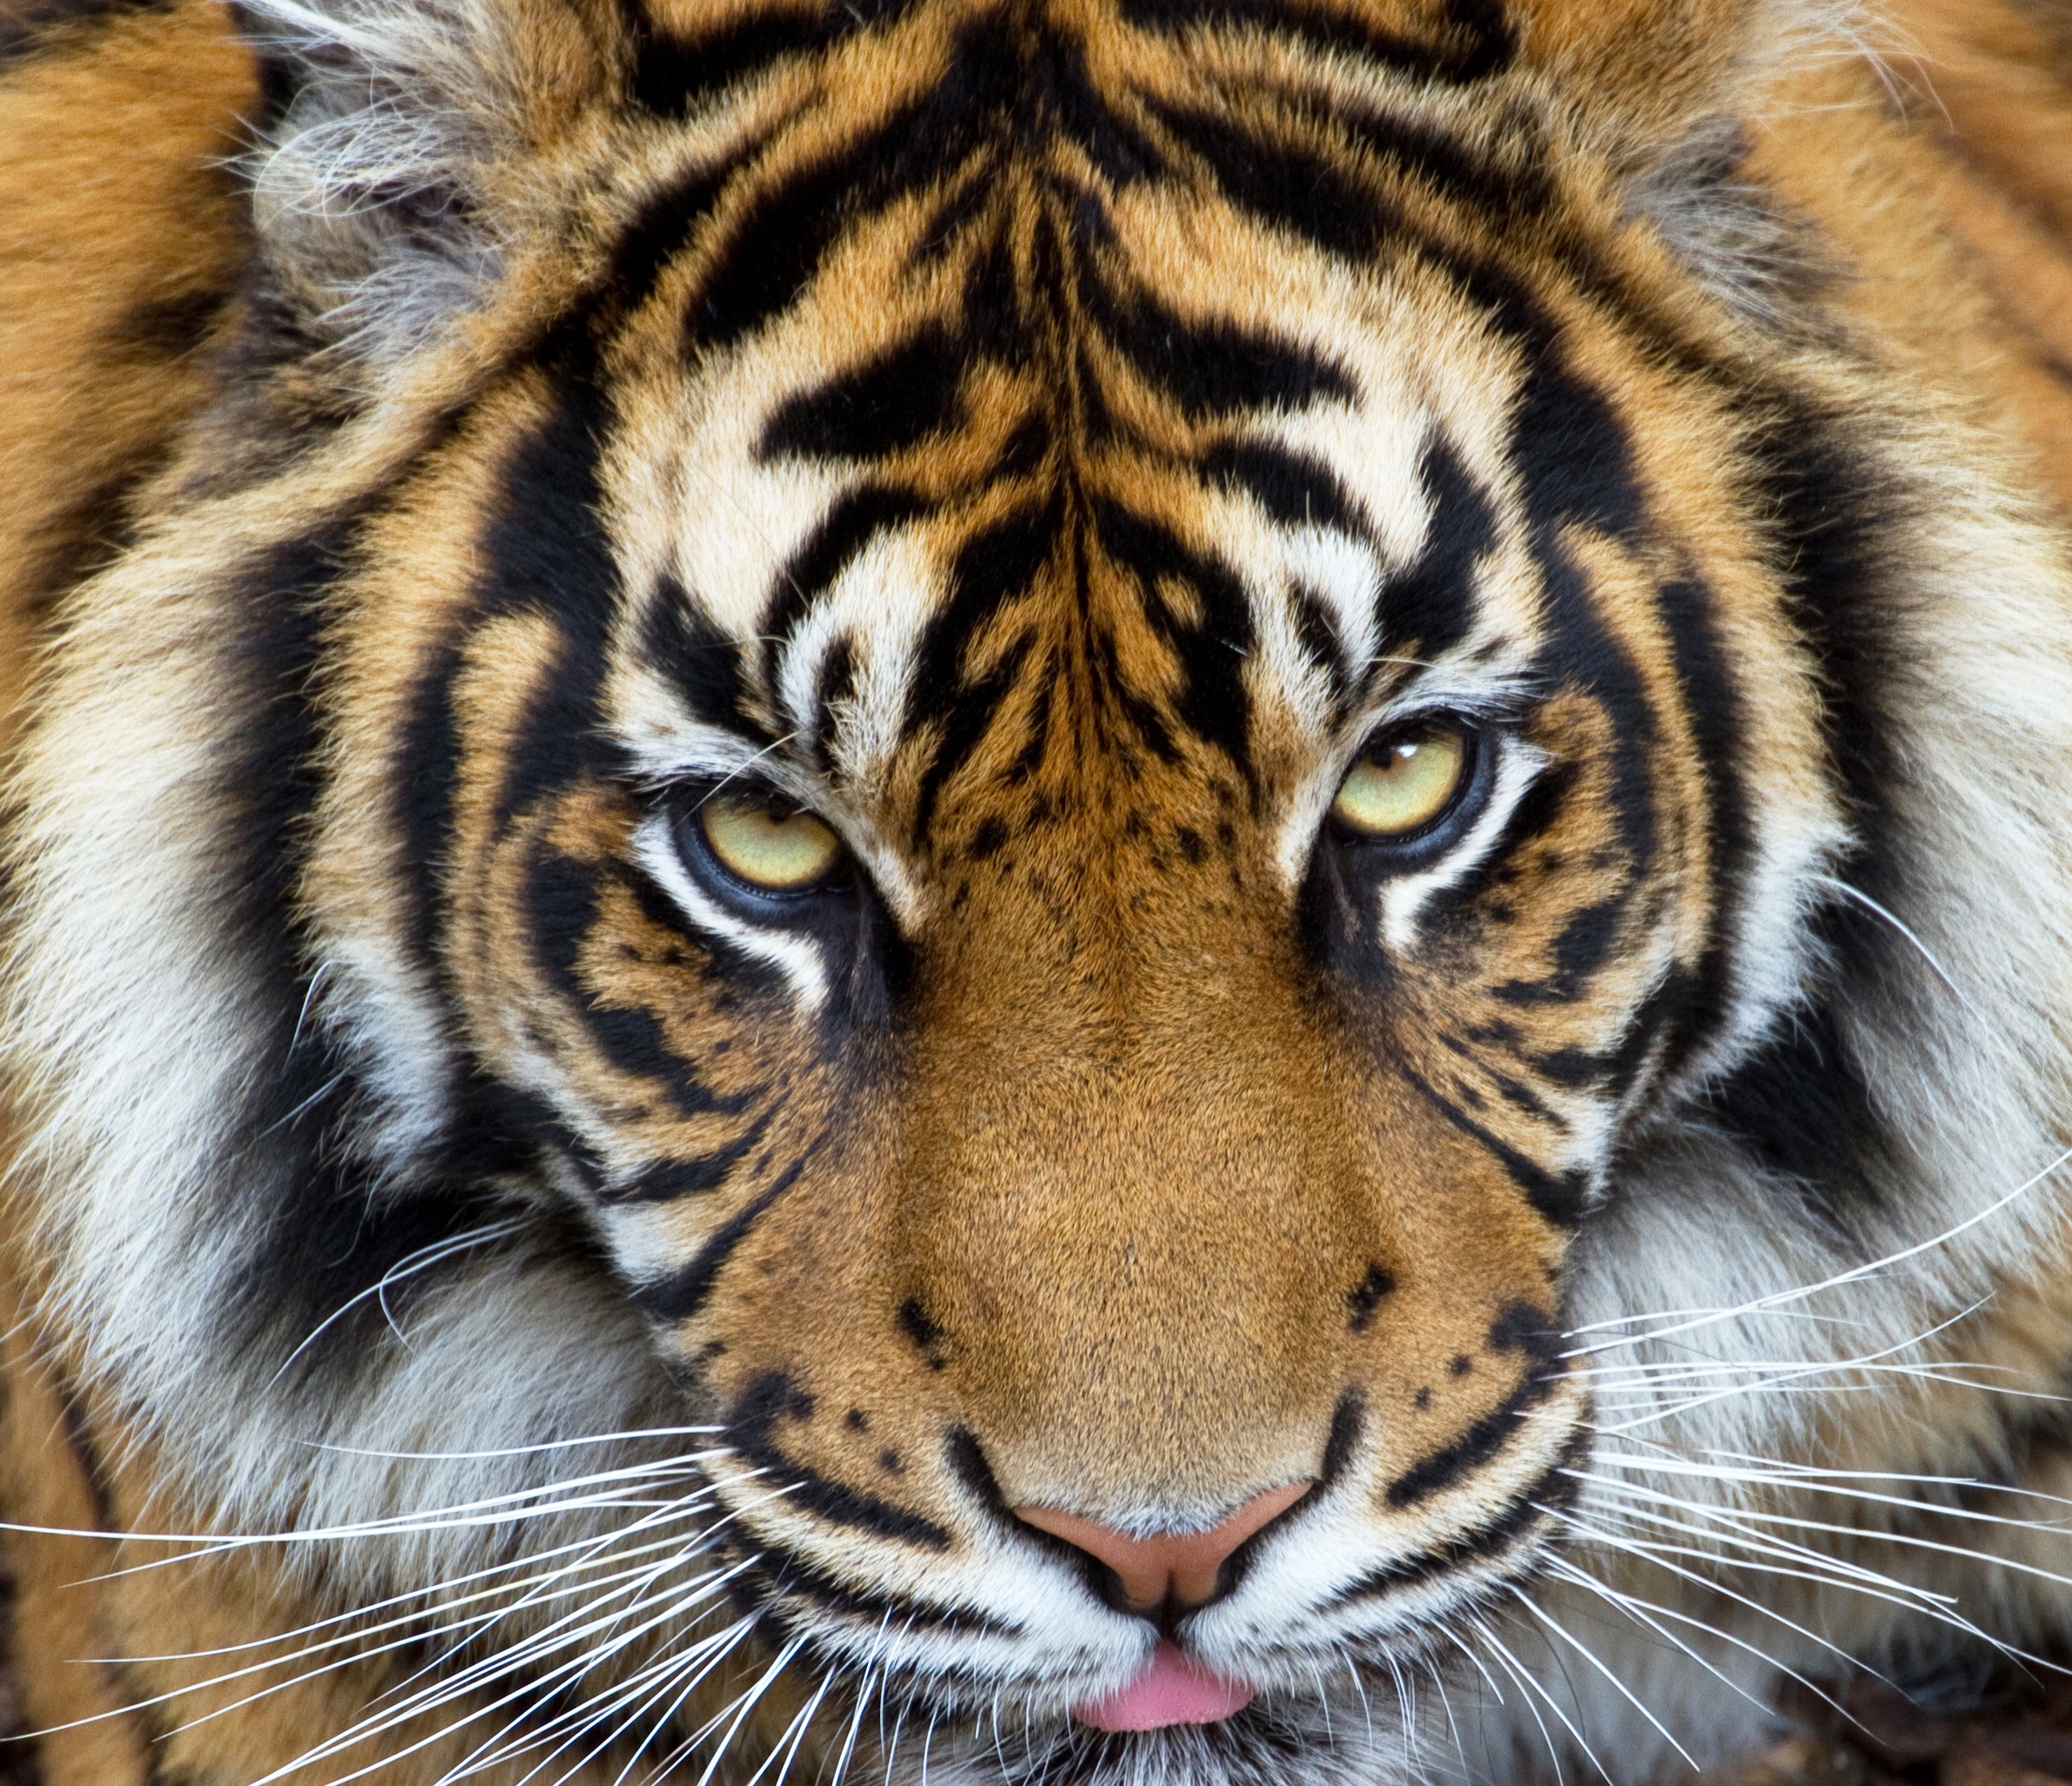 Sumatran Tiger 3 7110769819